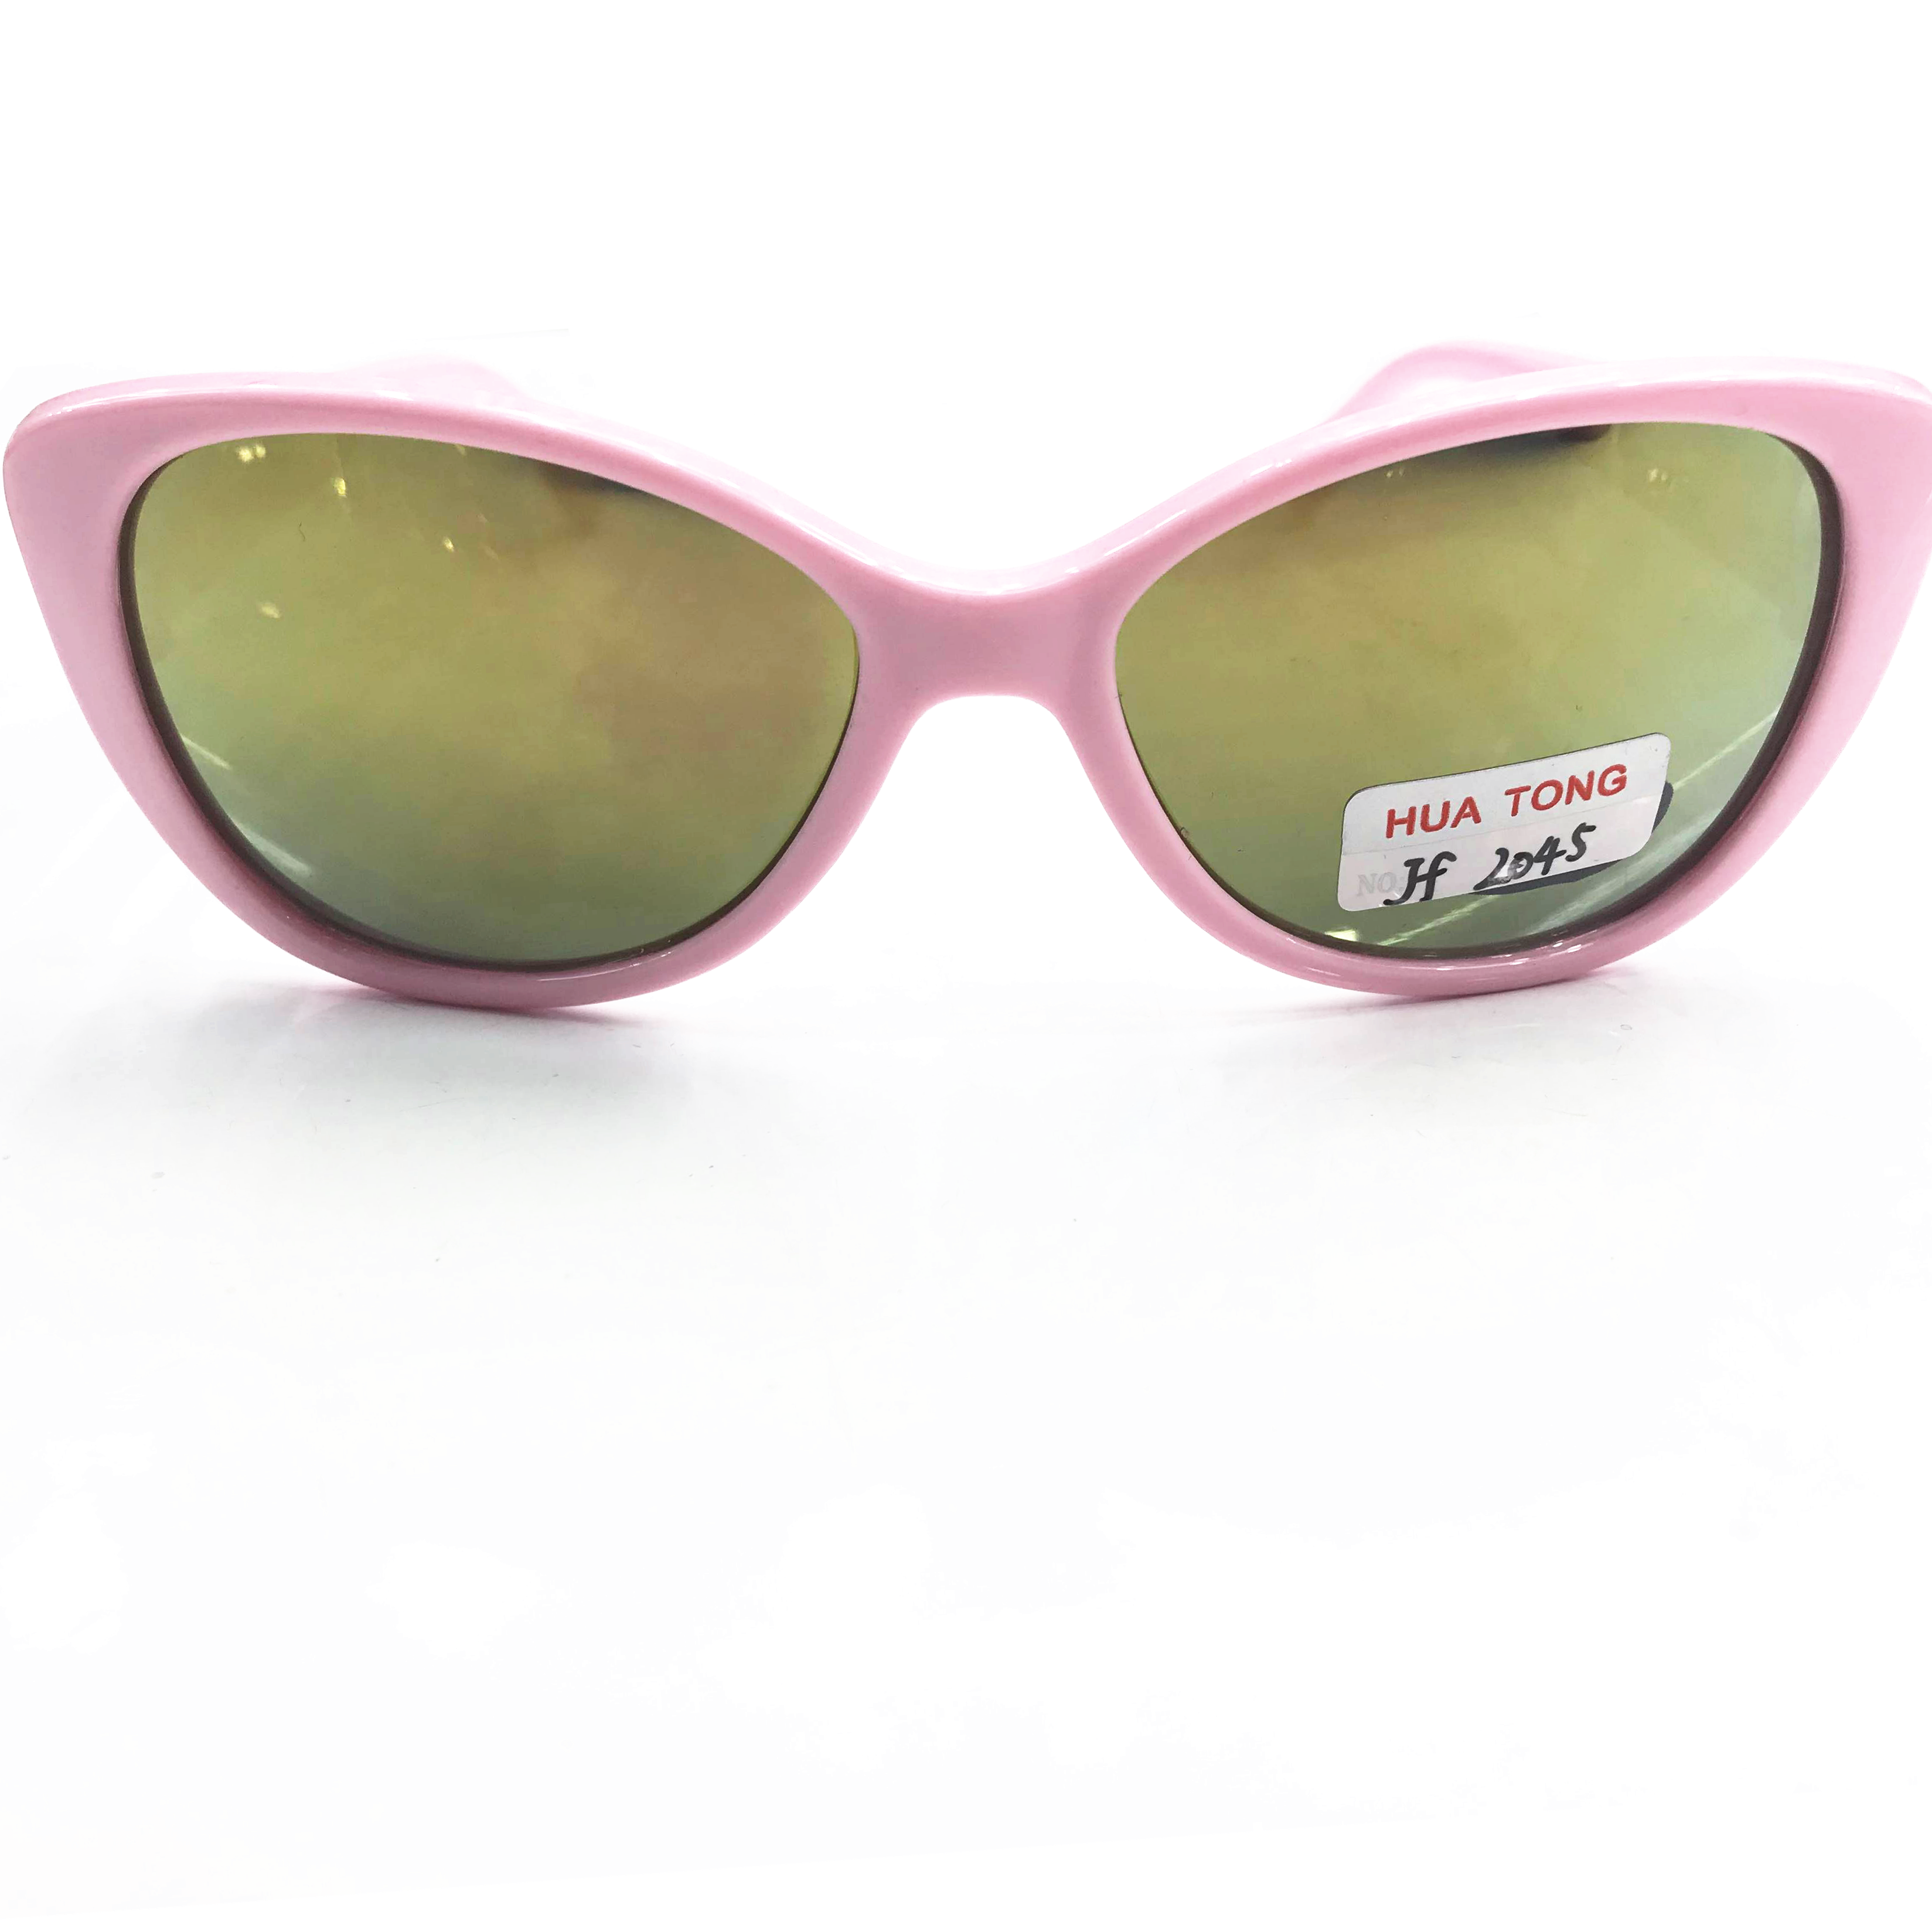 2020最新款儿童时尚太阳镜防紫外线眼镜UV400镀膜1904图